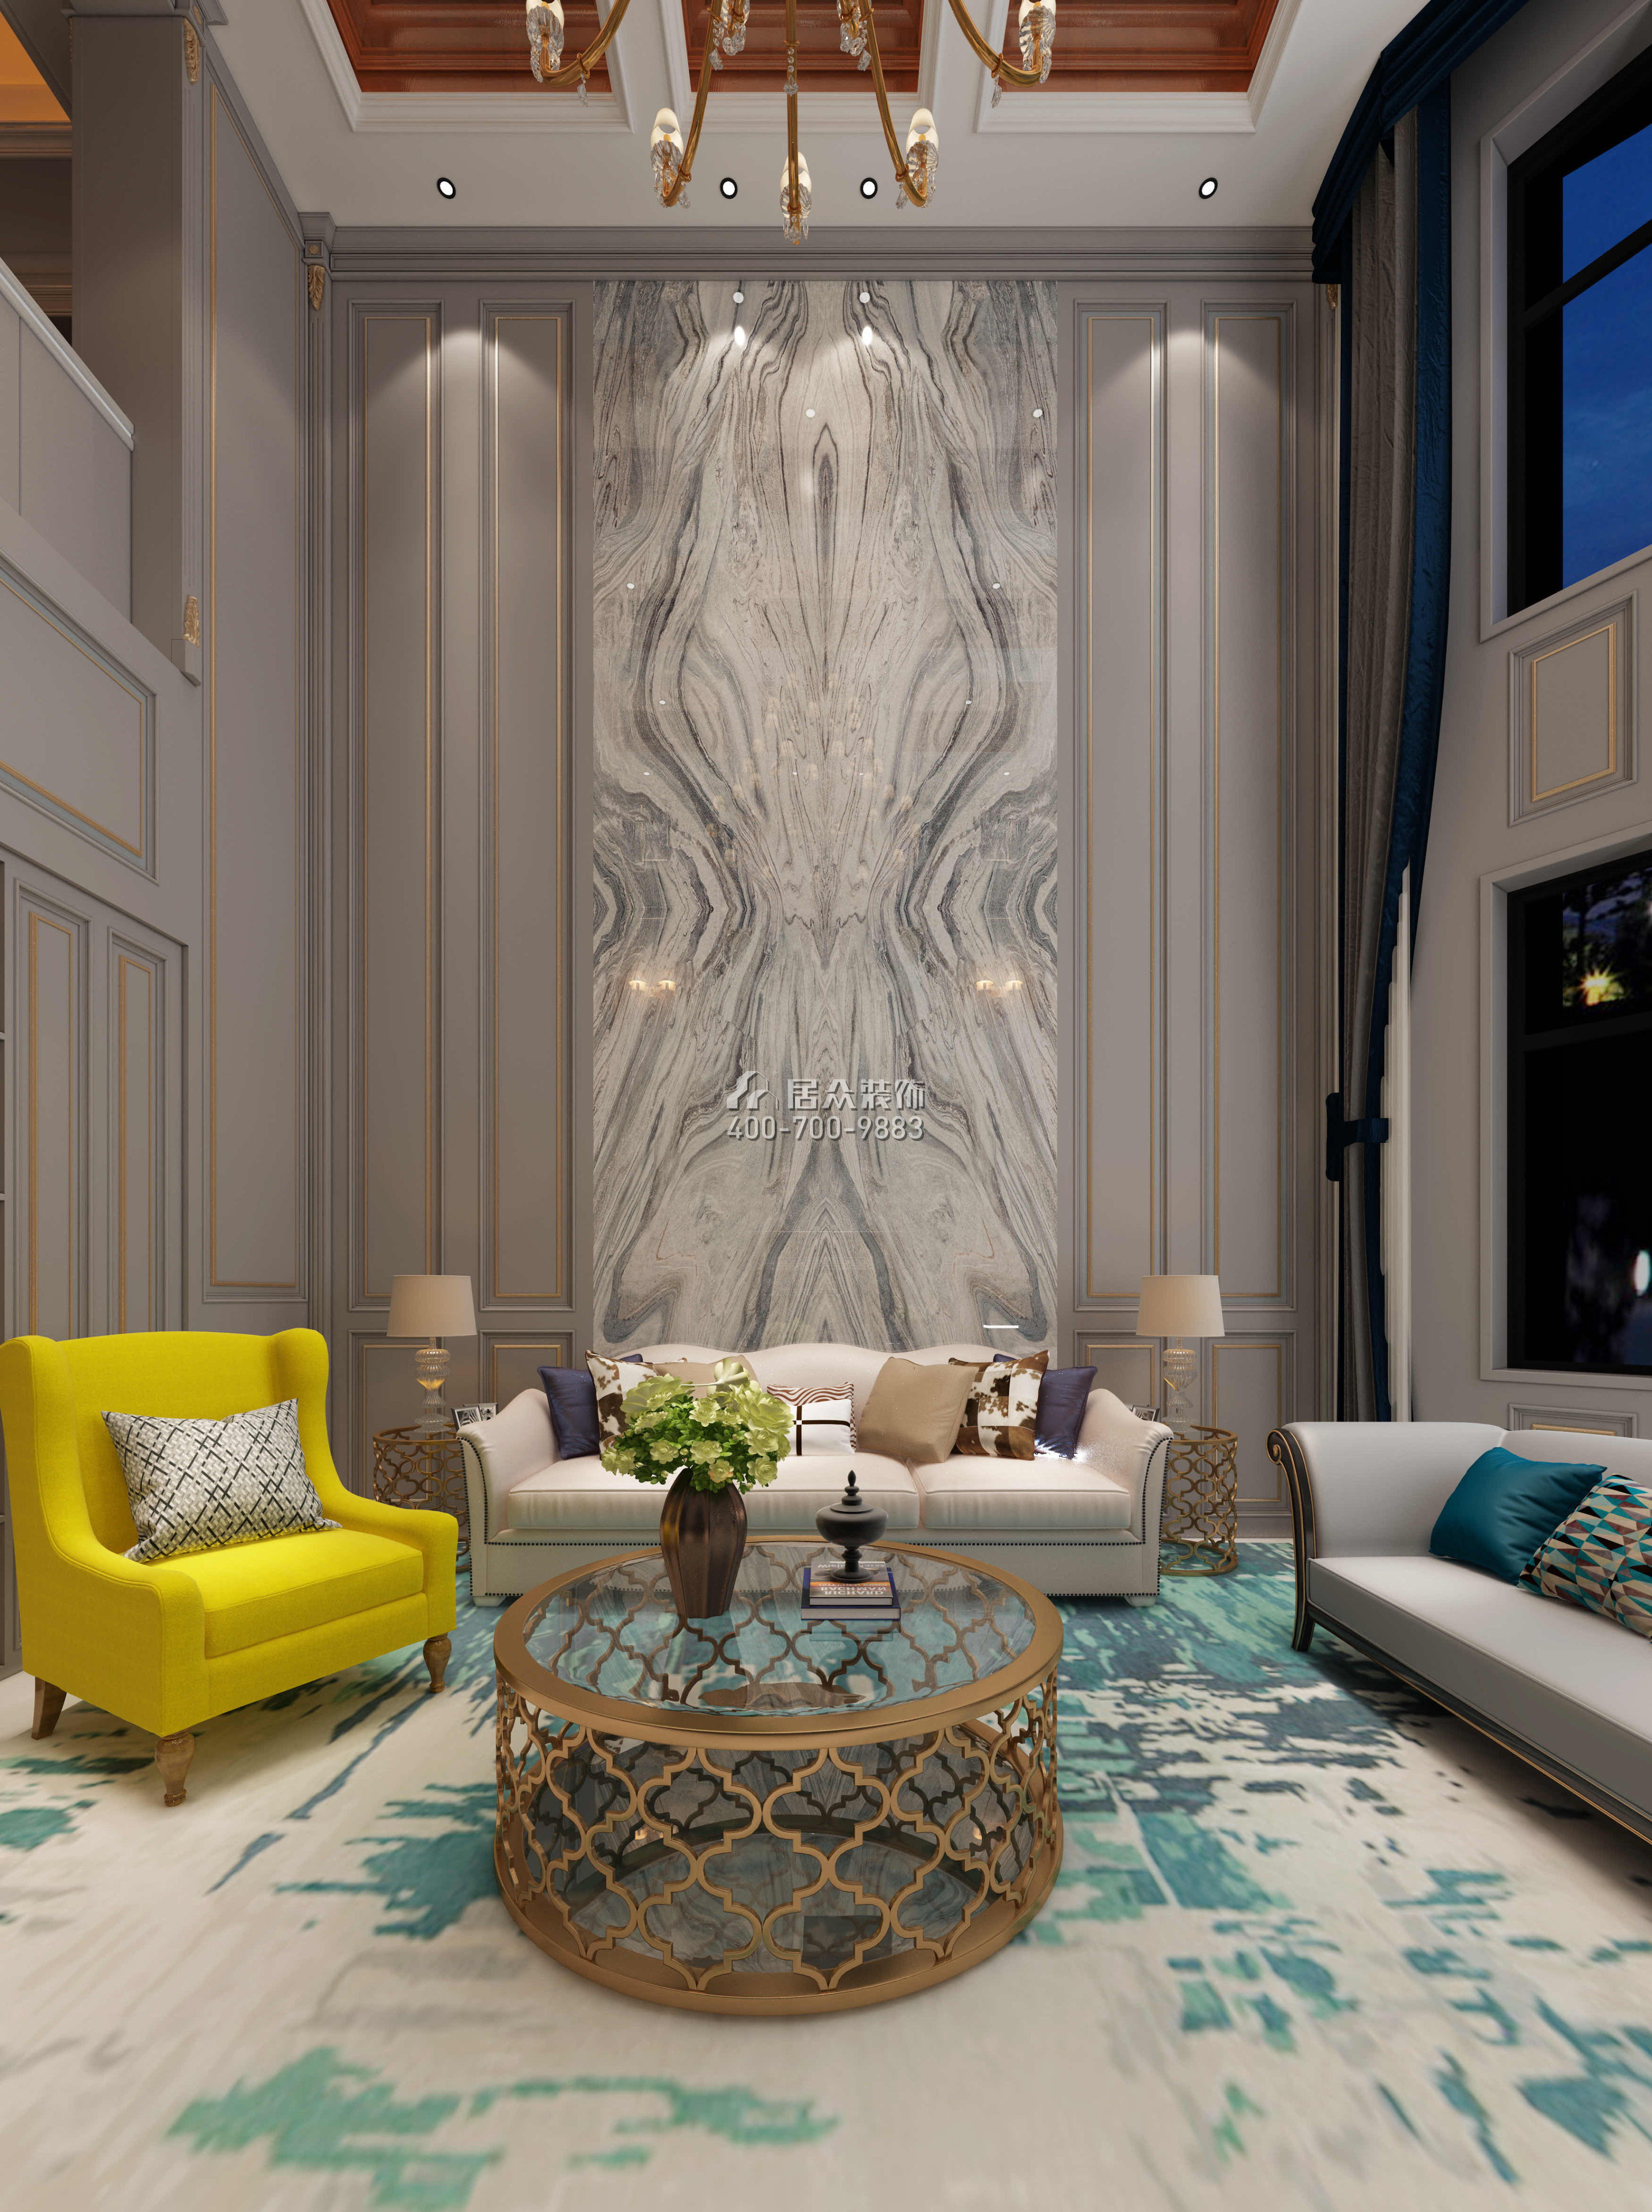 保利中央公园300平方米美式风格别墅户型客厅装修效果图